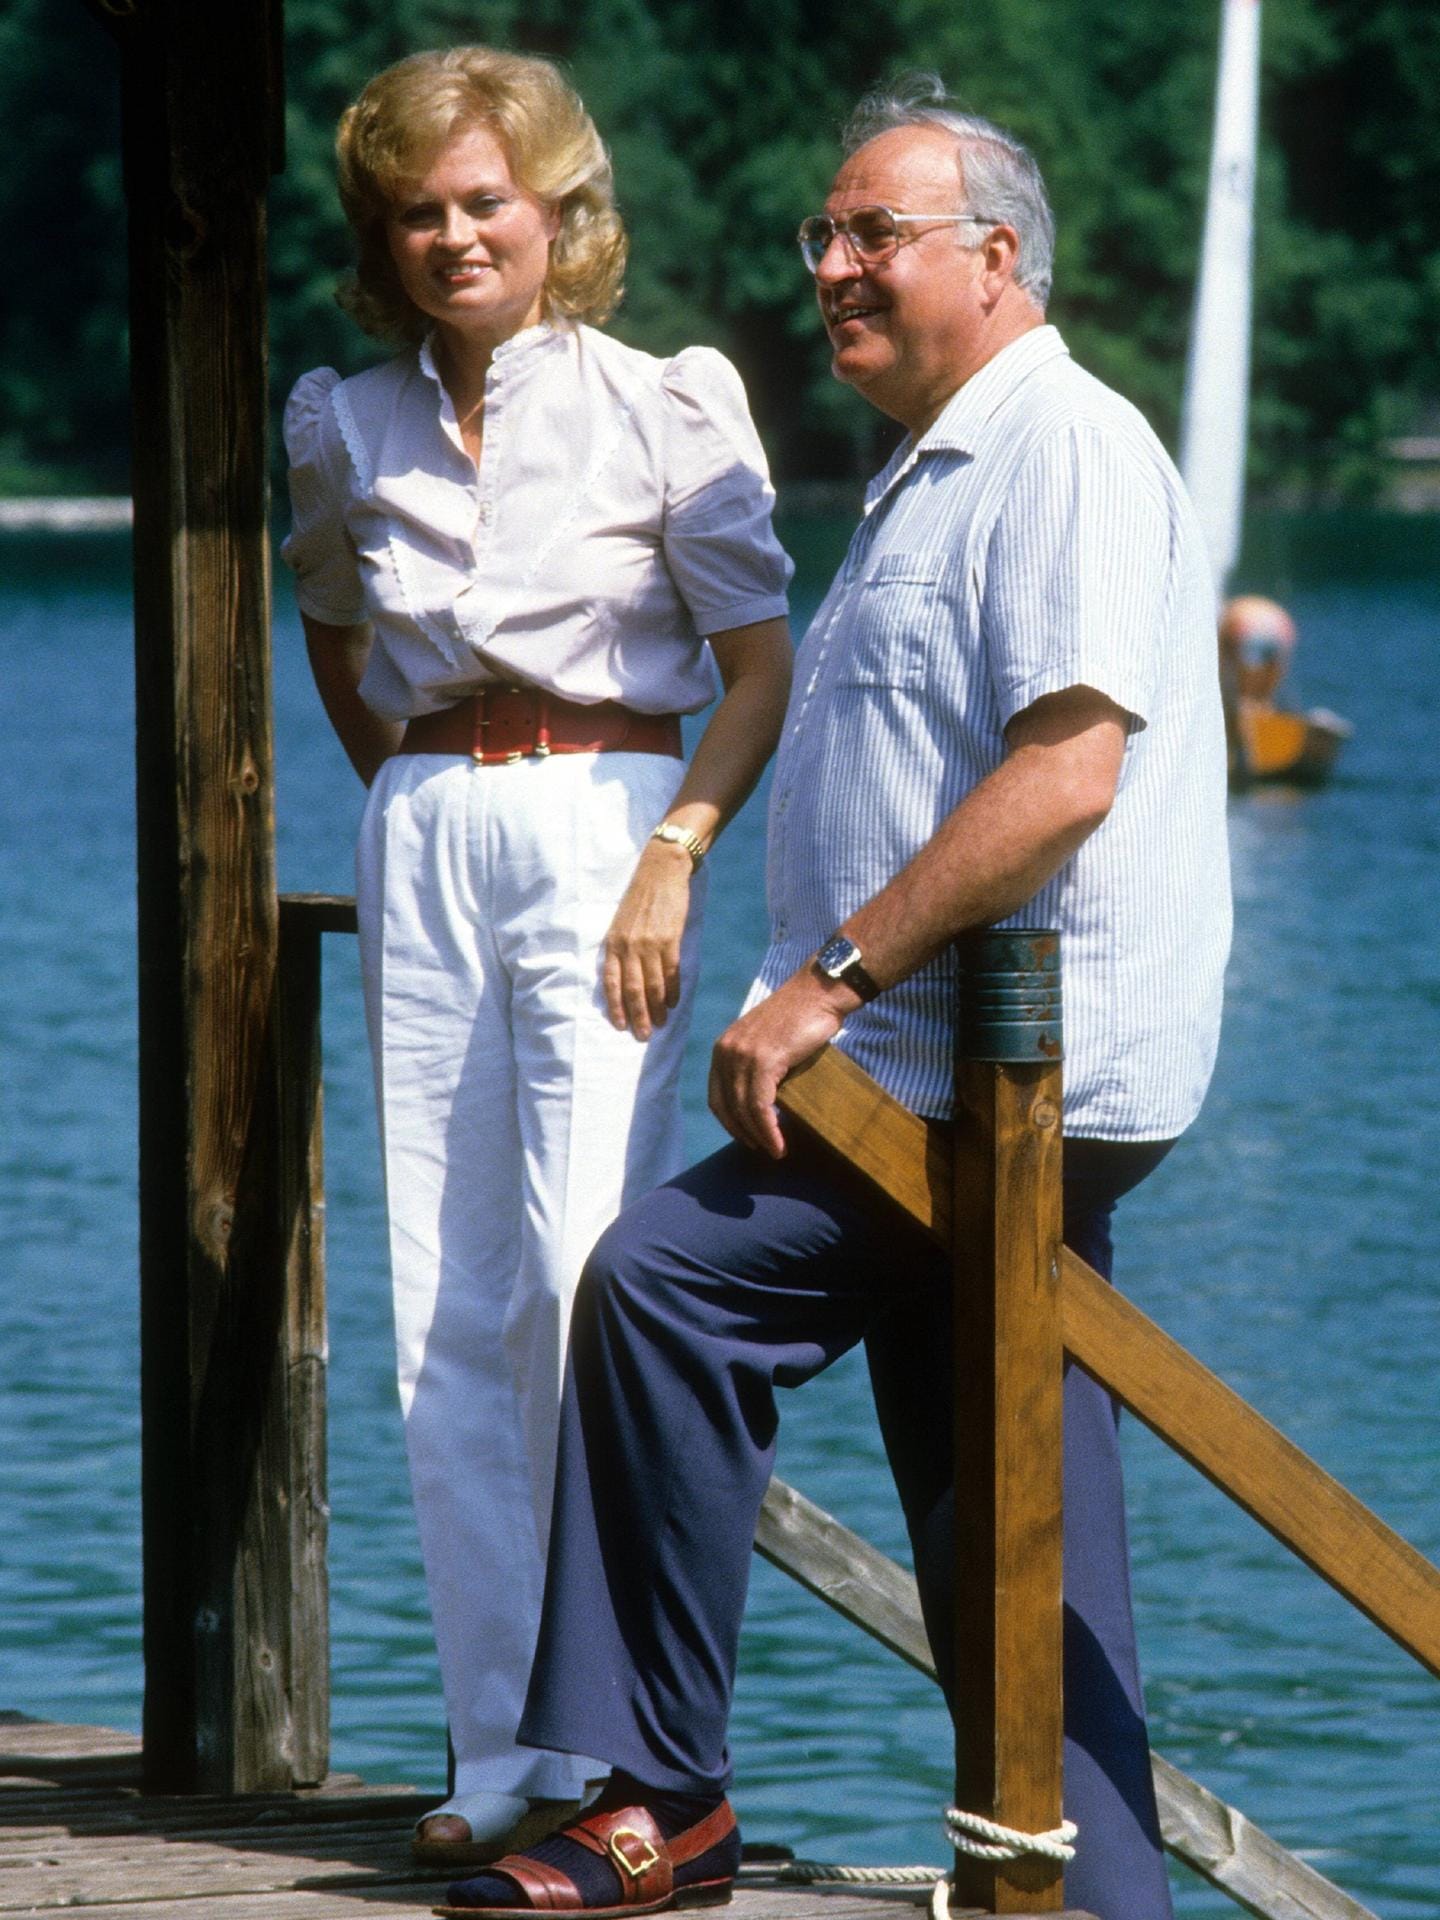 Von 1982 bis 1998 war Helmut Kohl Bundeskanzler. In dieser Zeit ging er seiner Frau fremd. Er hatte eine jahrelange Affäre mit Beatrice Herbold.